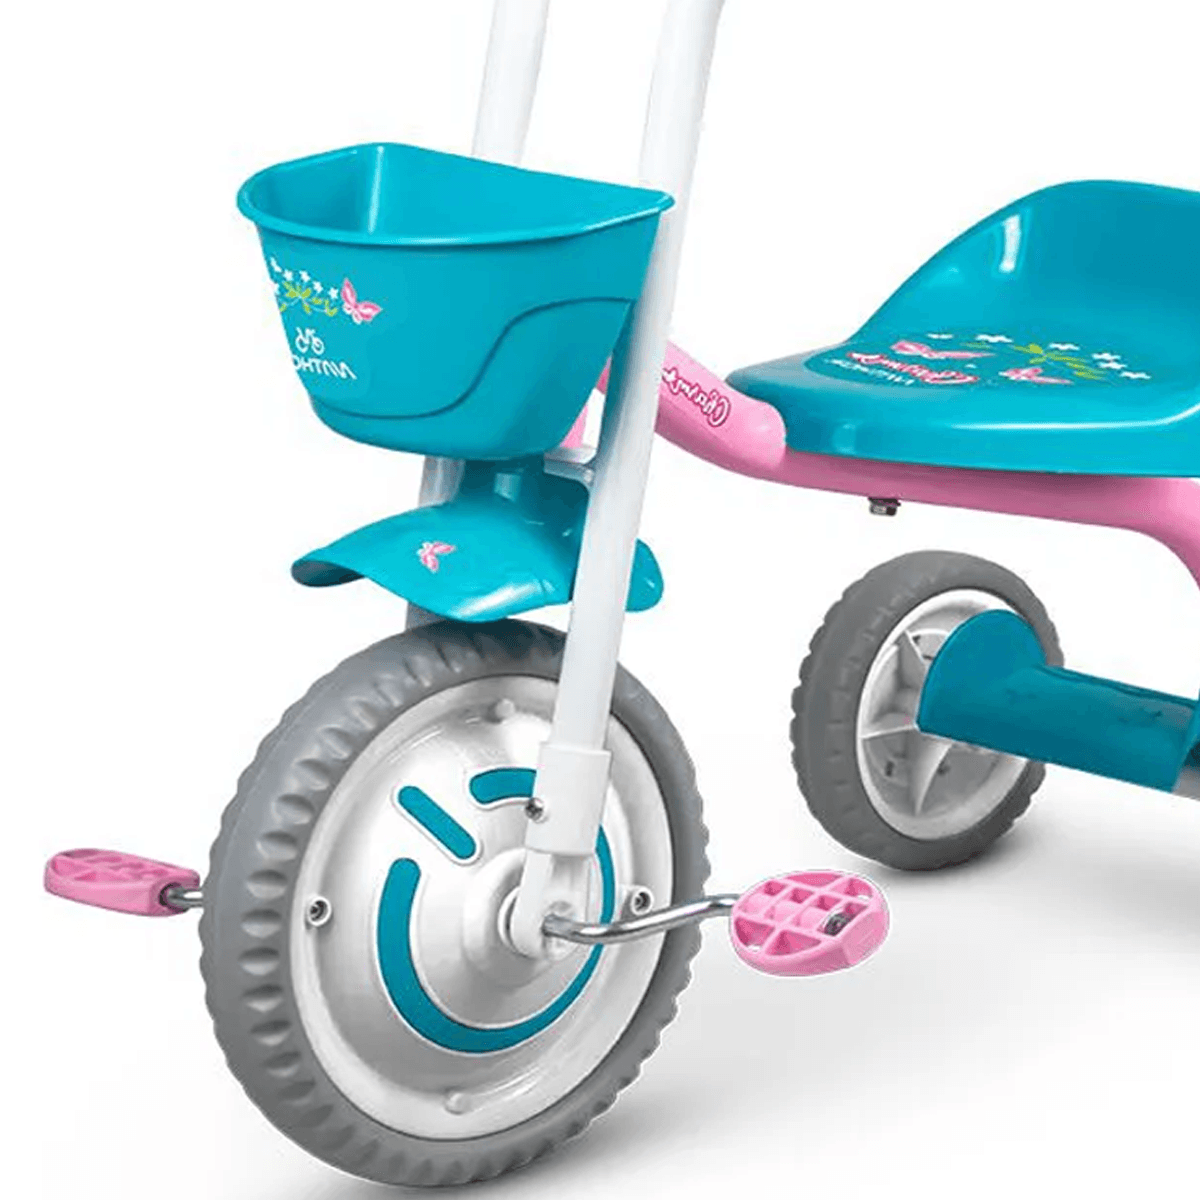 Triciclo Infantil Nathor Motoca Disney Mickey